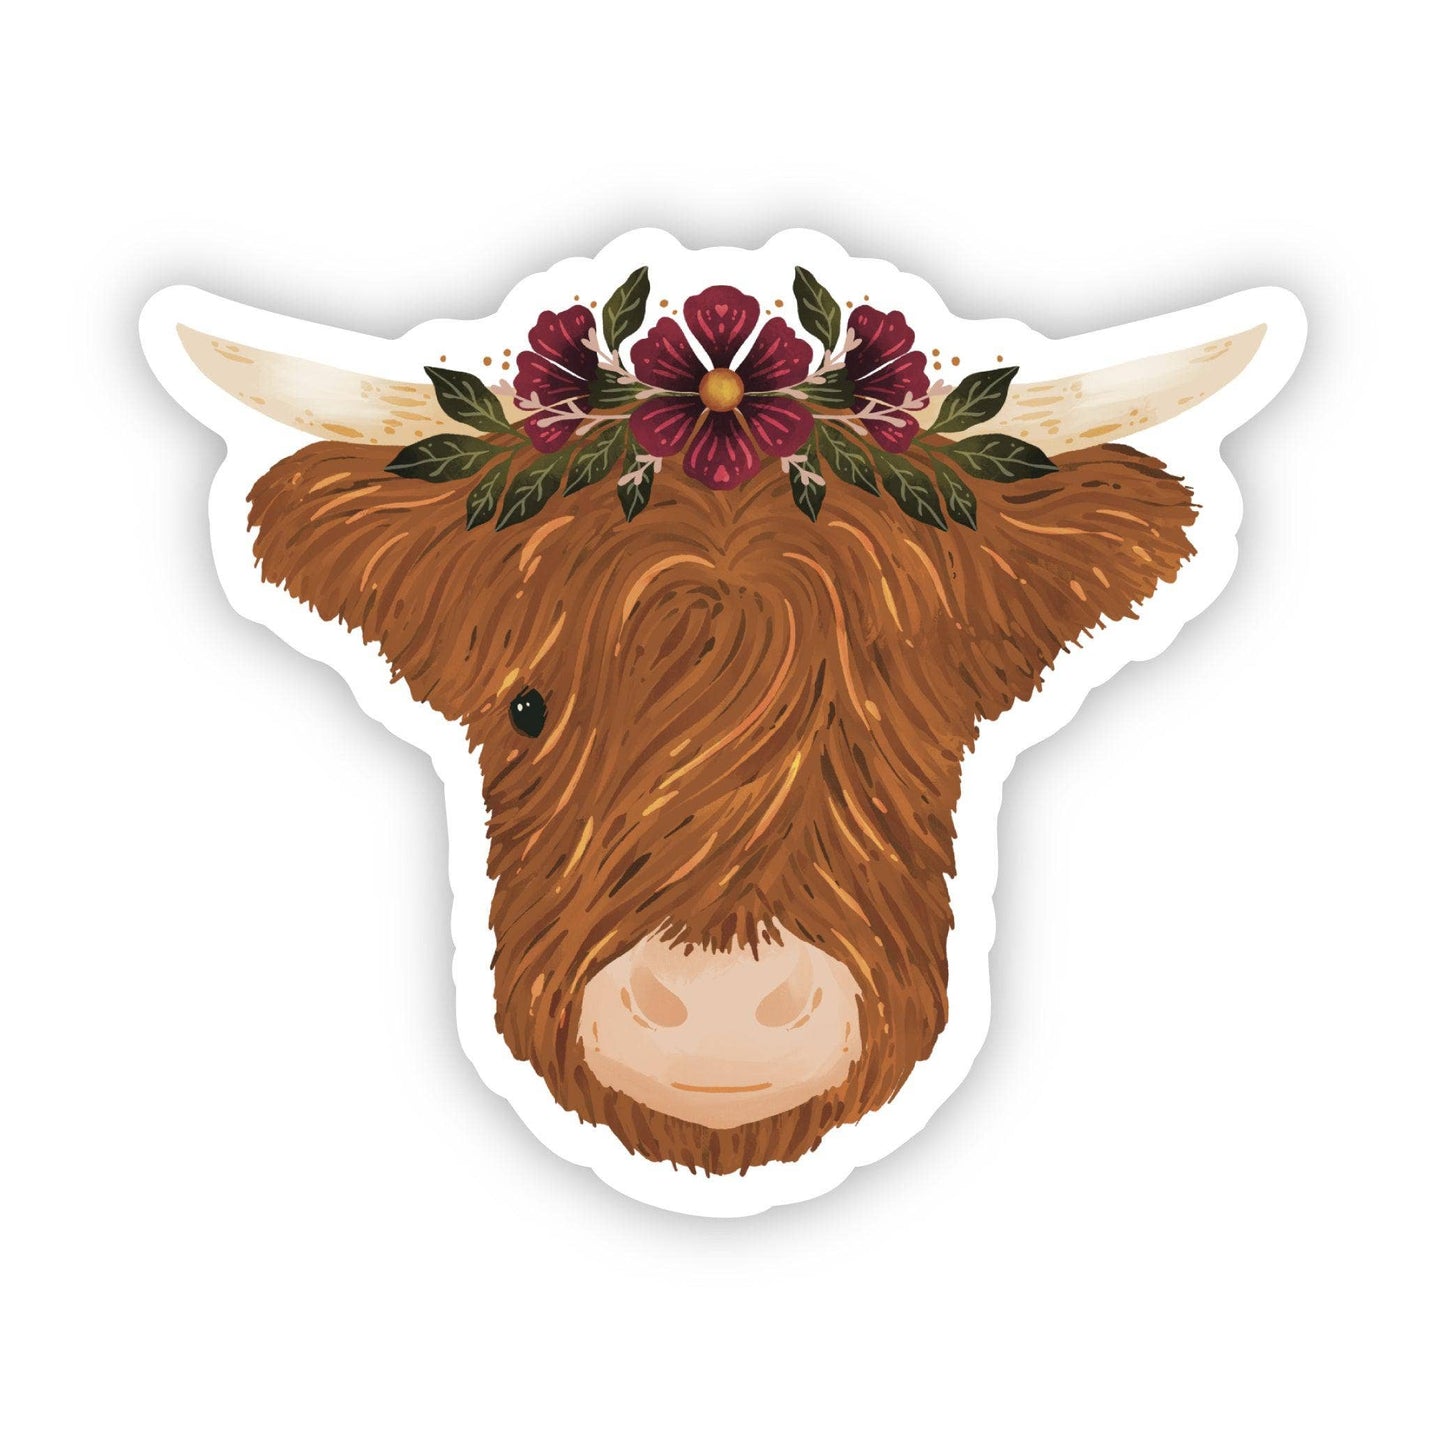 Highland Cow & Flower Crown Sticker